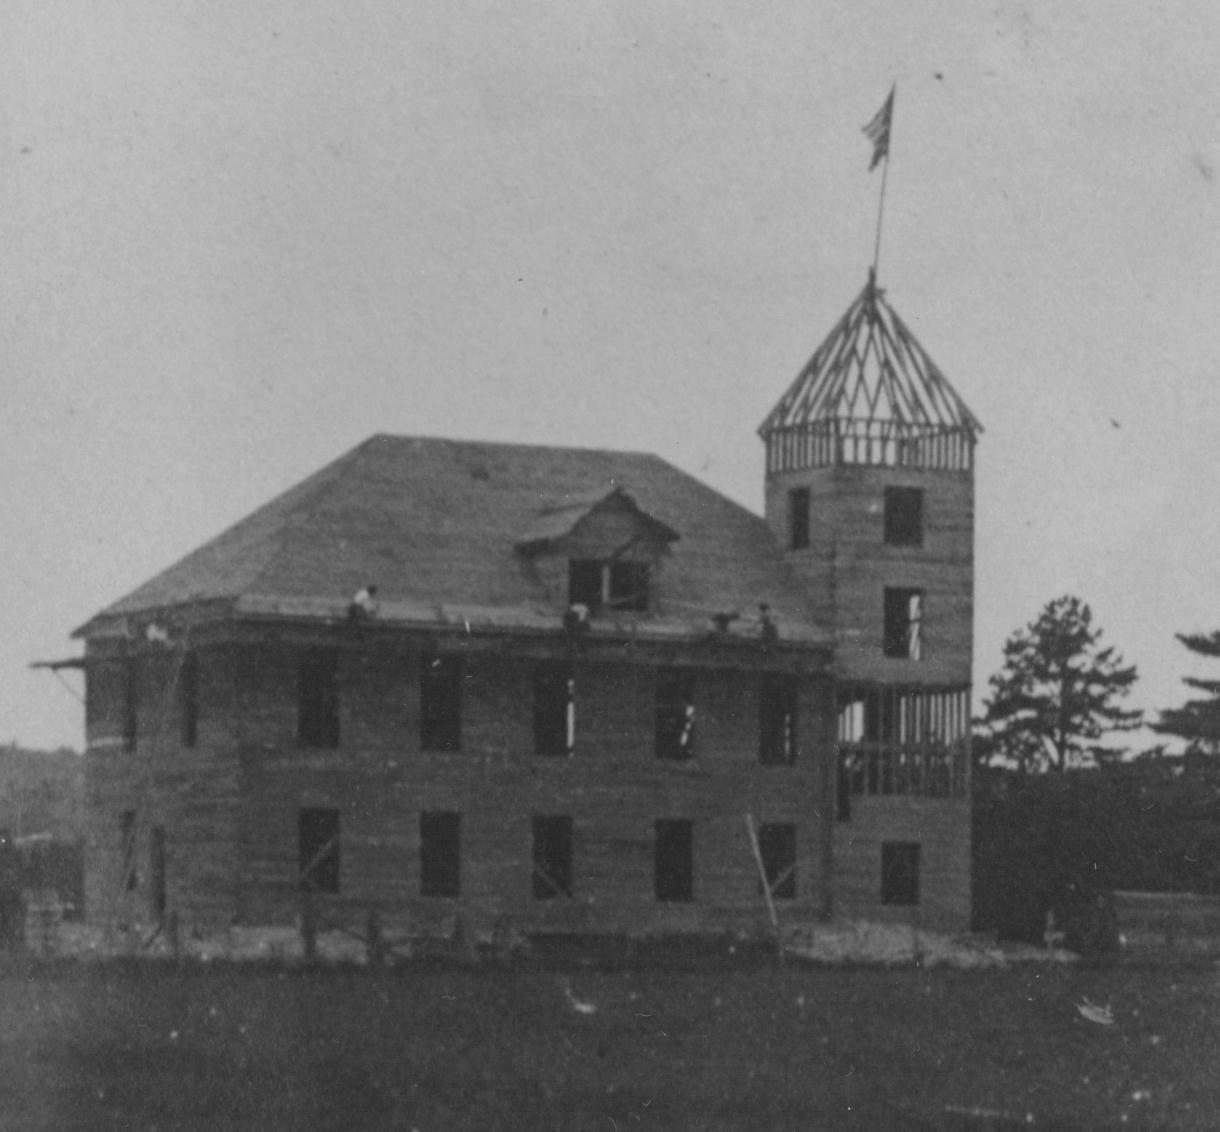 New Durham Town Hall under construction, 1907